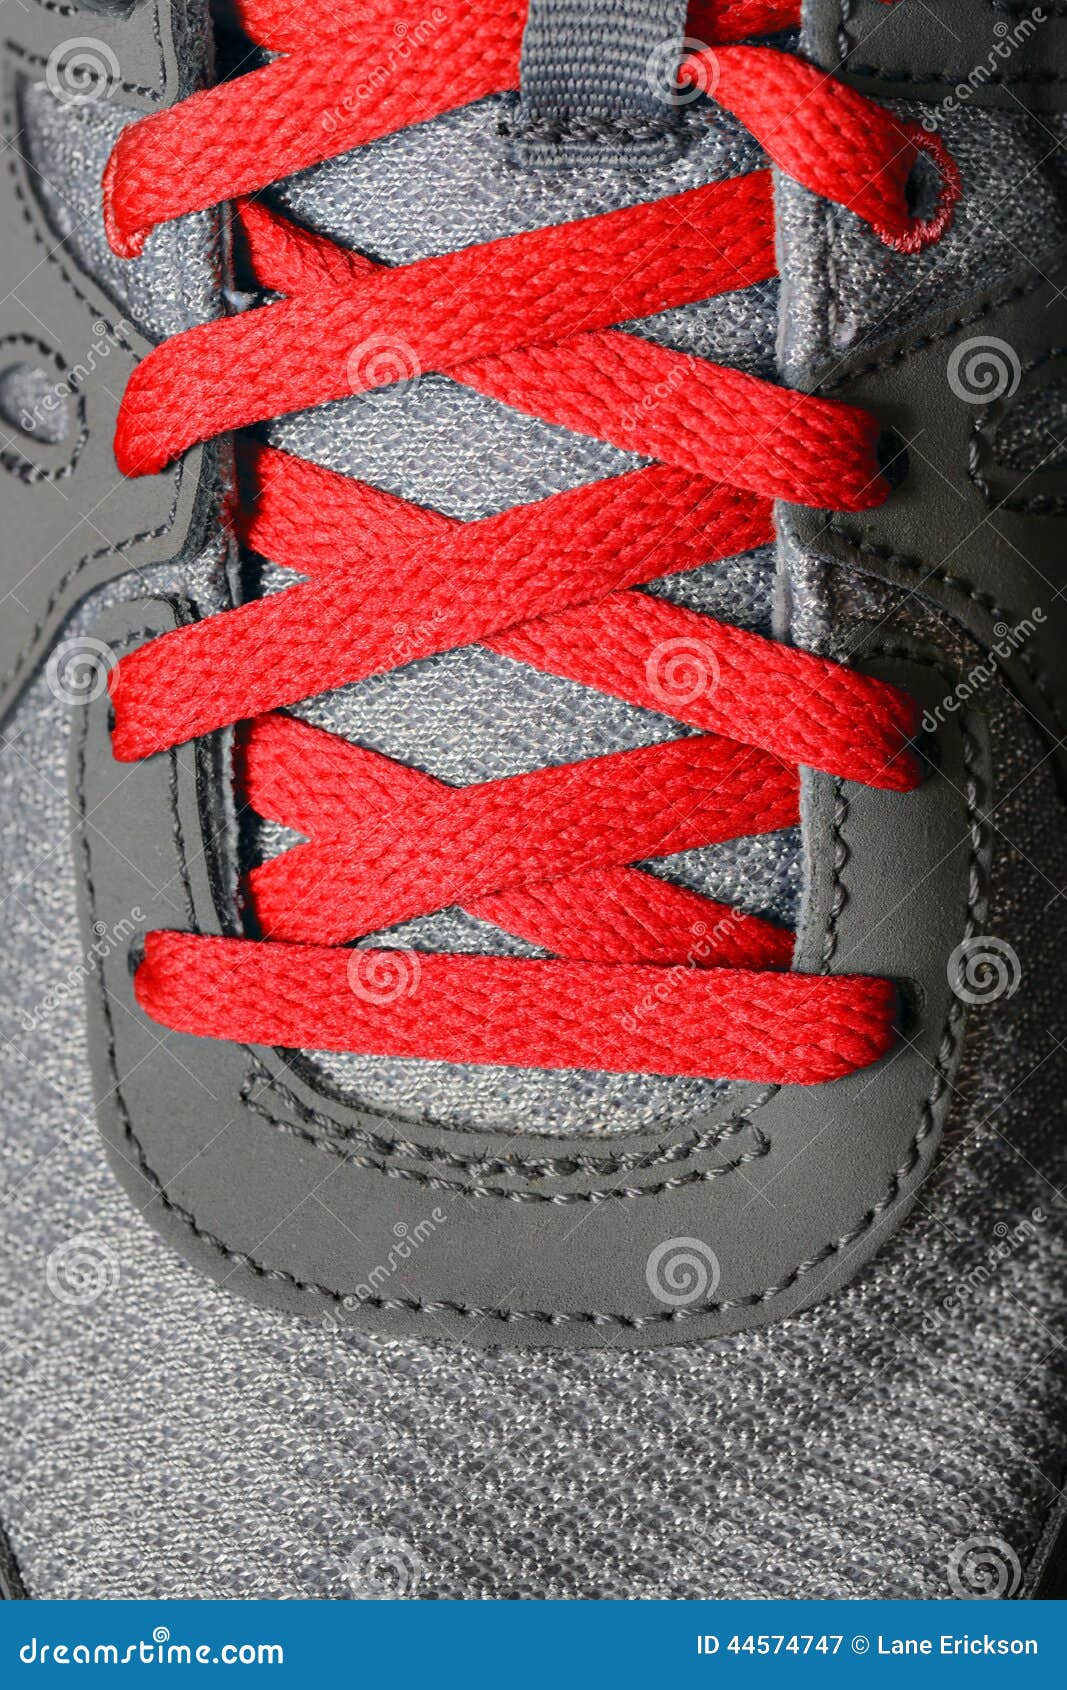 Easy Tie Shoelaces Discontinued – Easy Tie Shoelaces